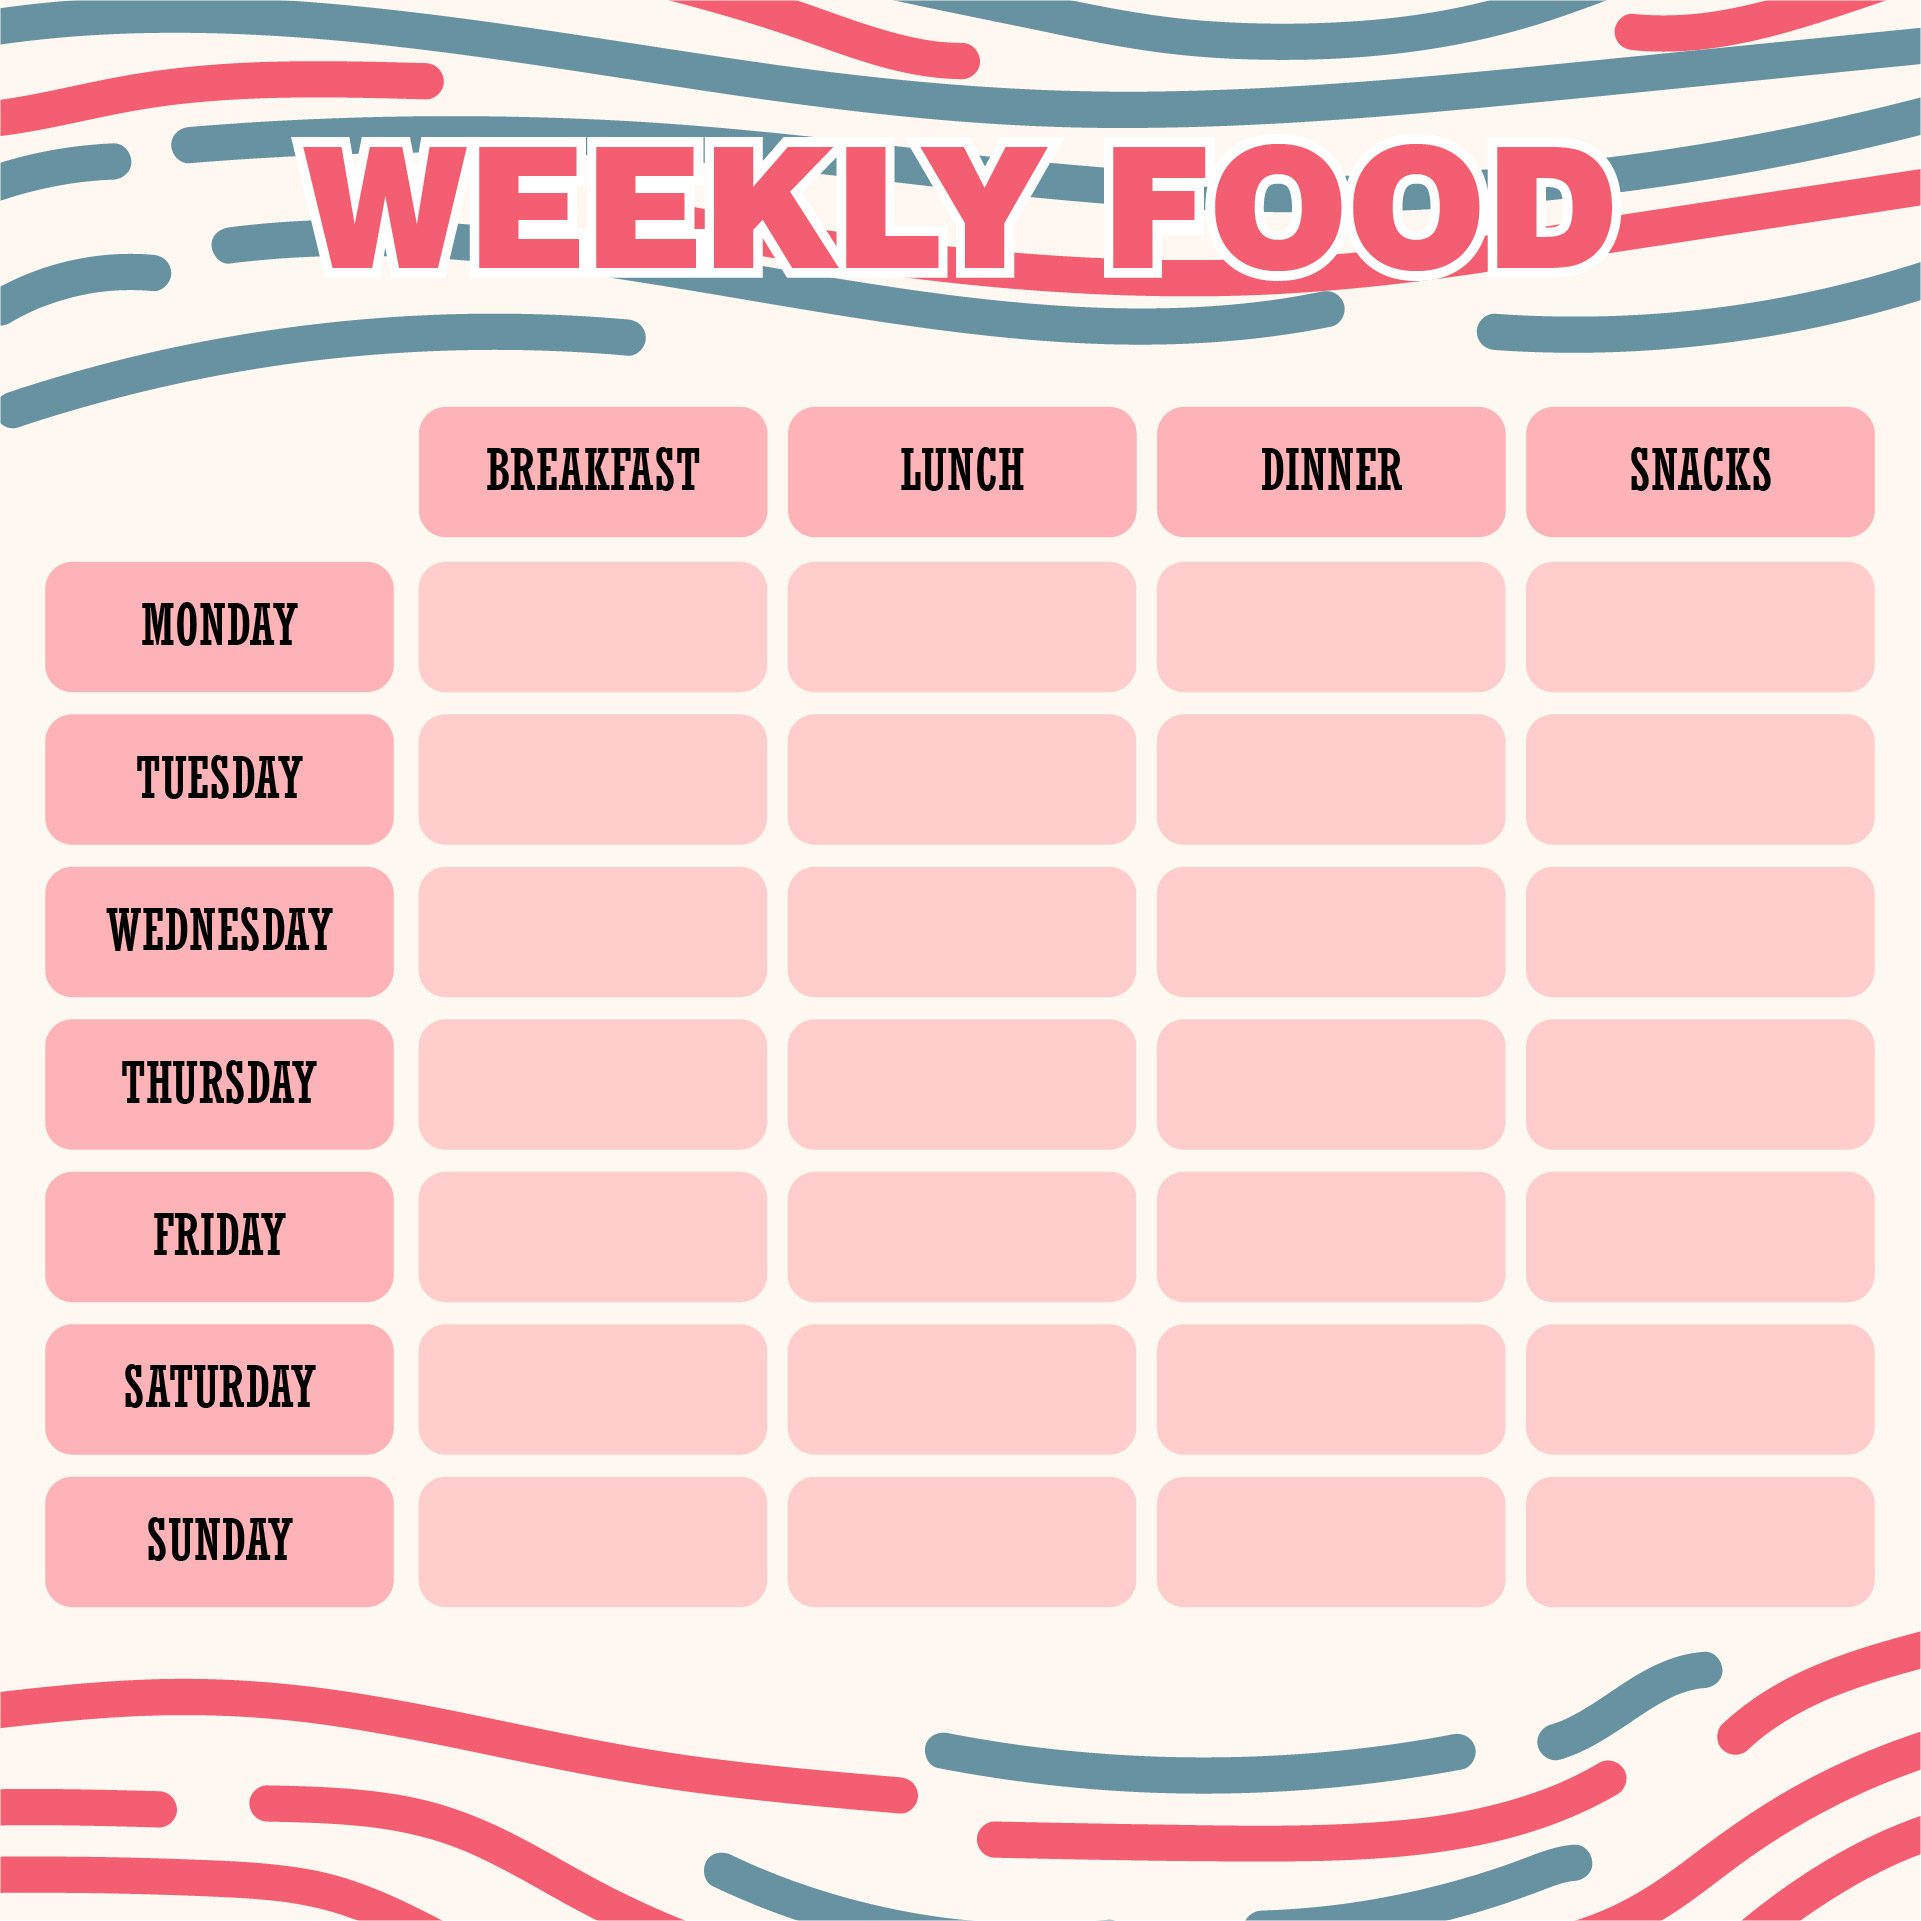 10-best-printable-weekly-food-log-journal-printablee